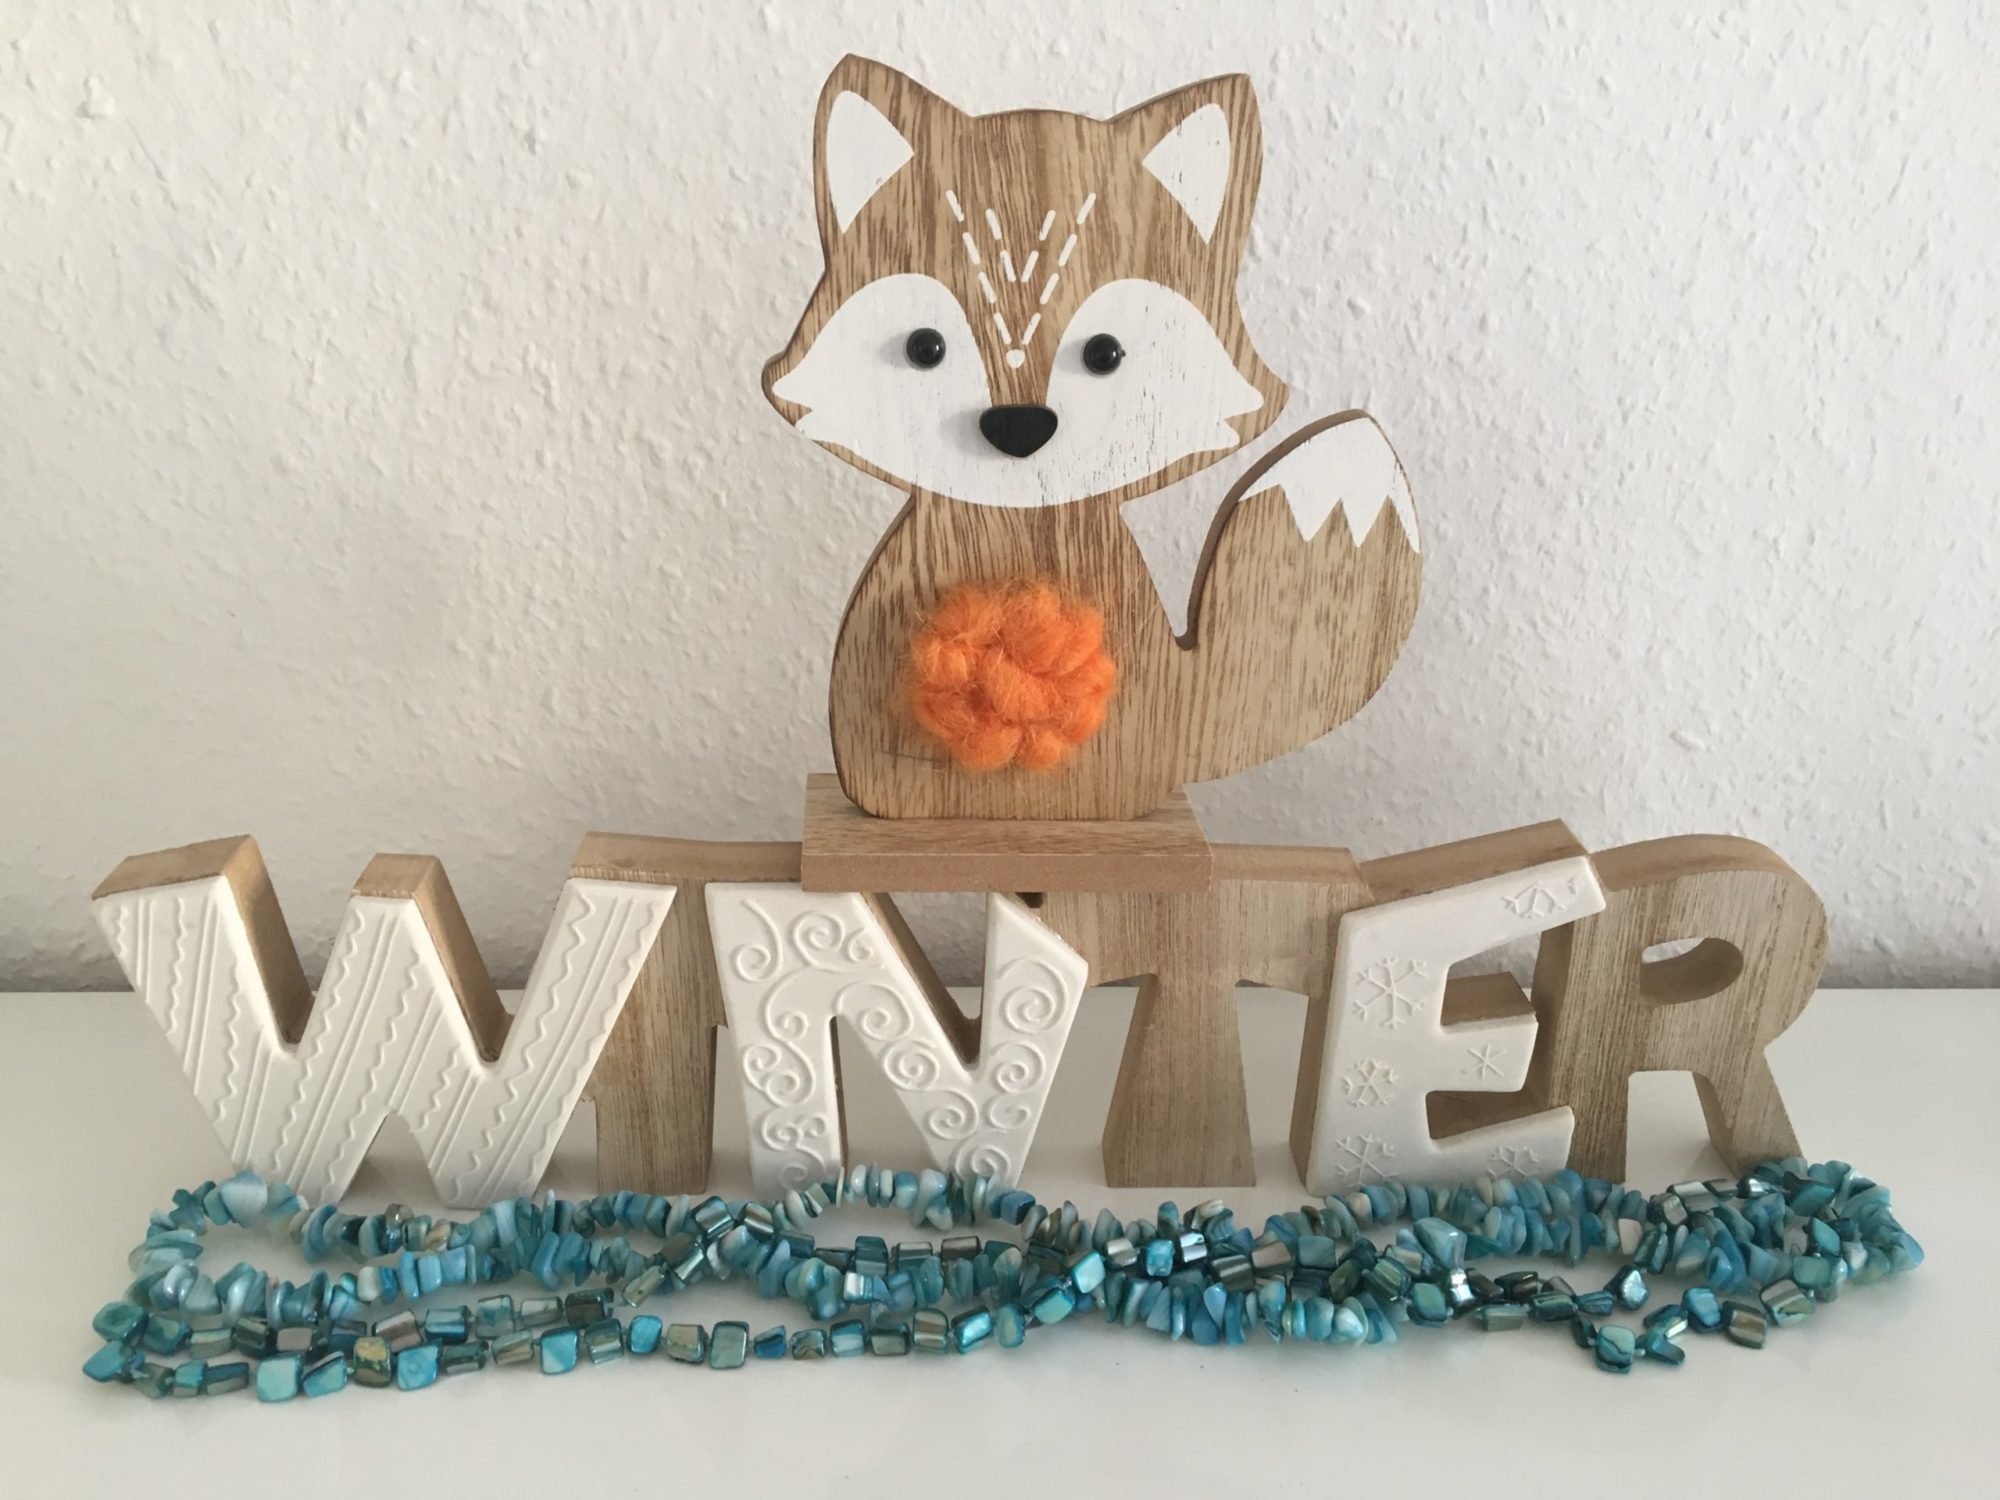 Holz Logo von einem Fuchs vor dem Schriftzug "Winter"